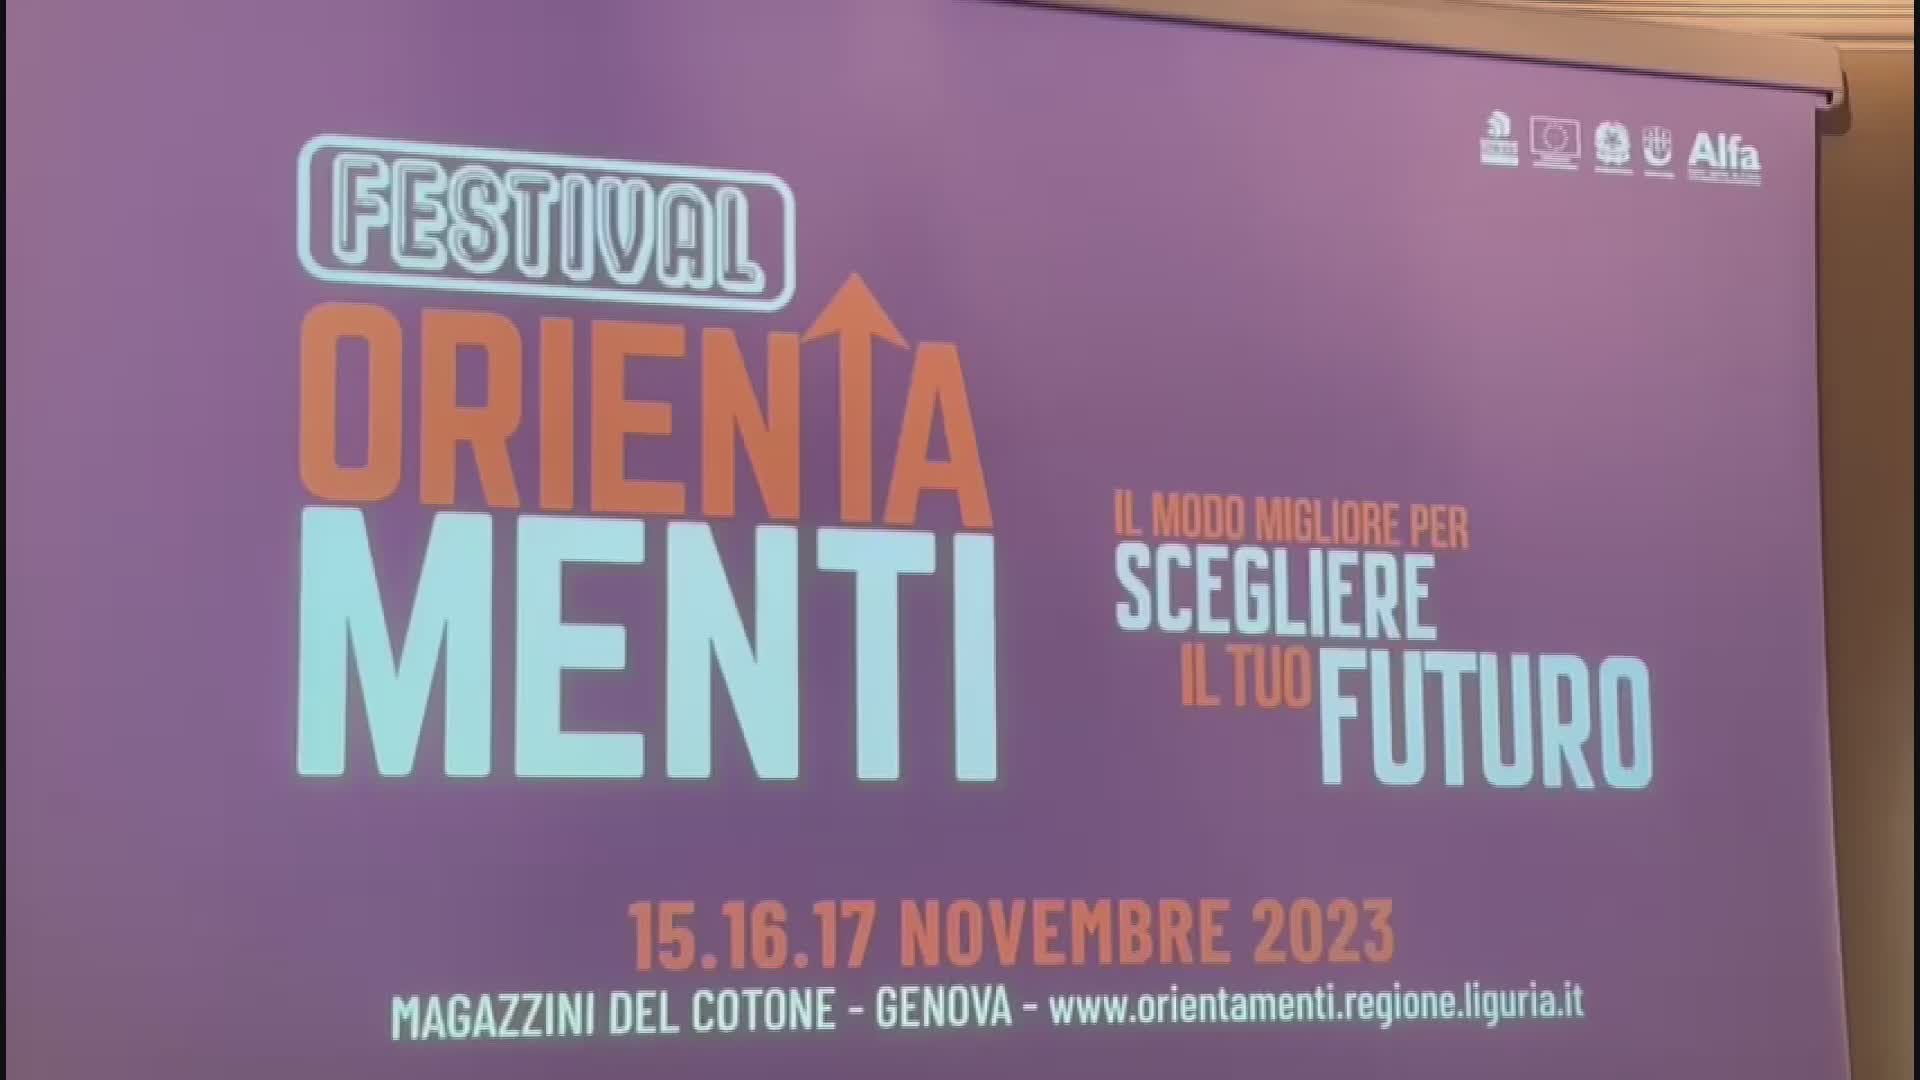 Liguria, dal 15 al 17 novembre Festival Orientamenti. L'assessore Scajola: "Puntiamo a superare le 100 mila presenze del 2022"